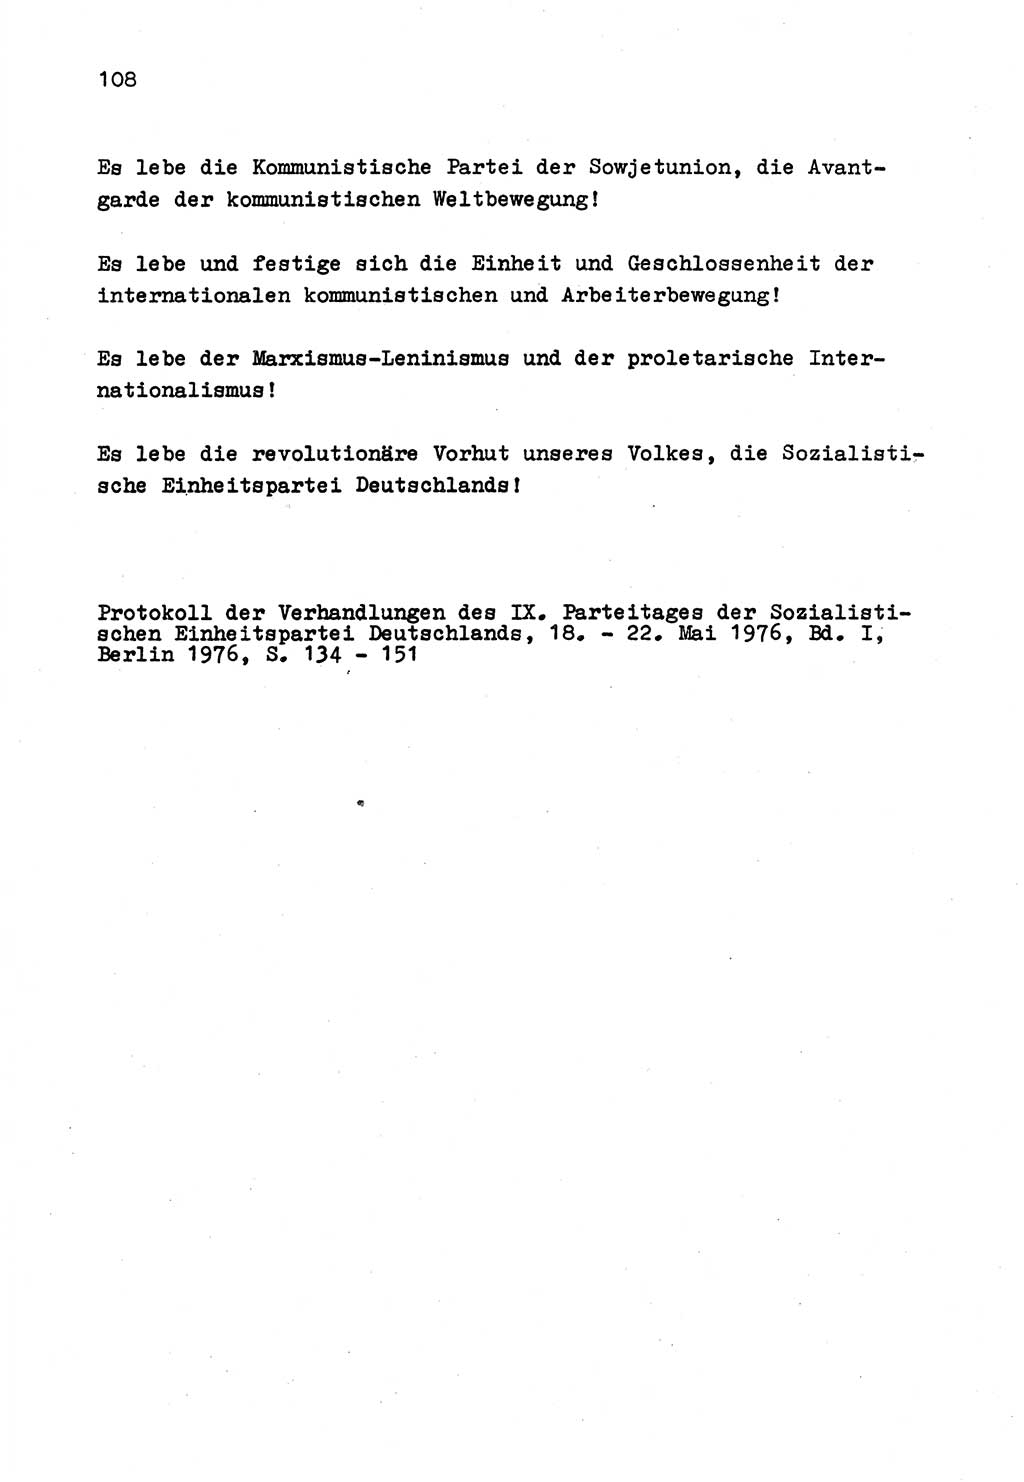 Zu Fragen der Parteiarbeit [Sozialistische Einheitspartei Deutschlands (SED) Deutsche Demokratische Republik (DDR)] 1979, Seite 108 (Fr. PA SED DDR 1979, S. 108)